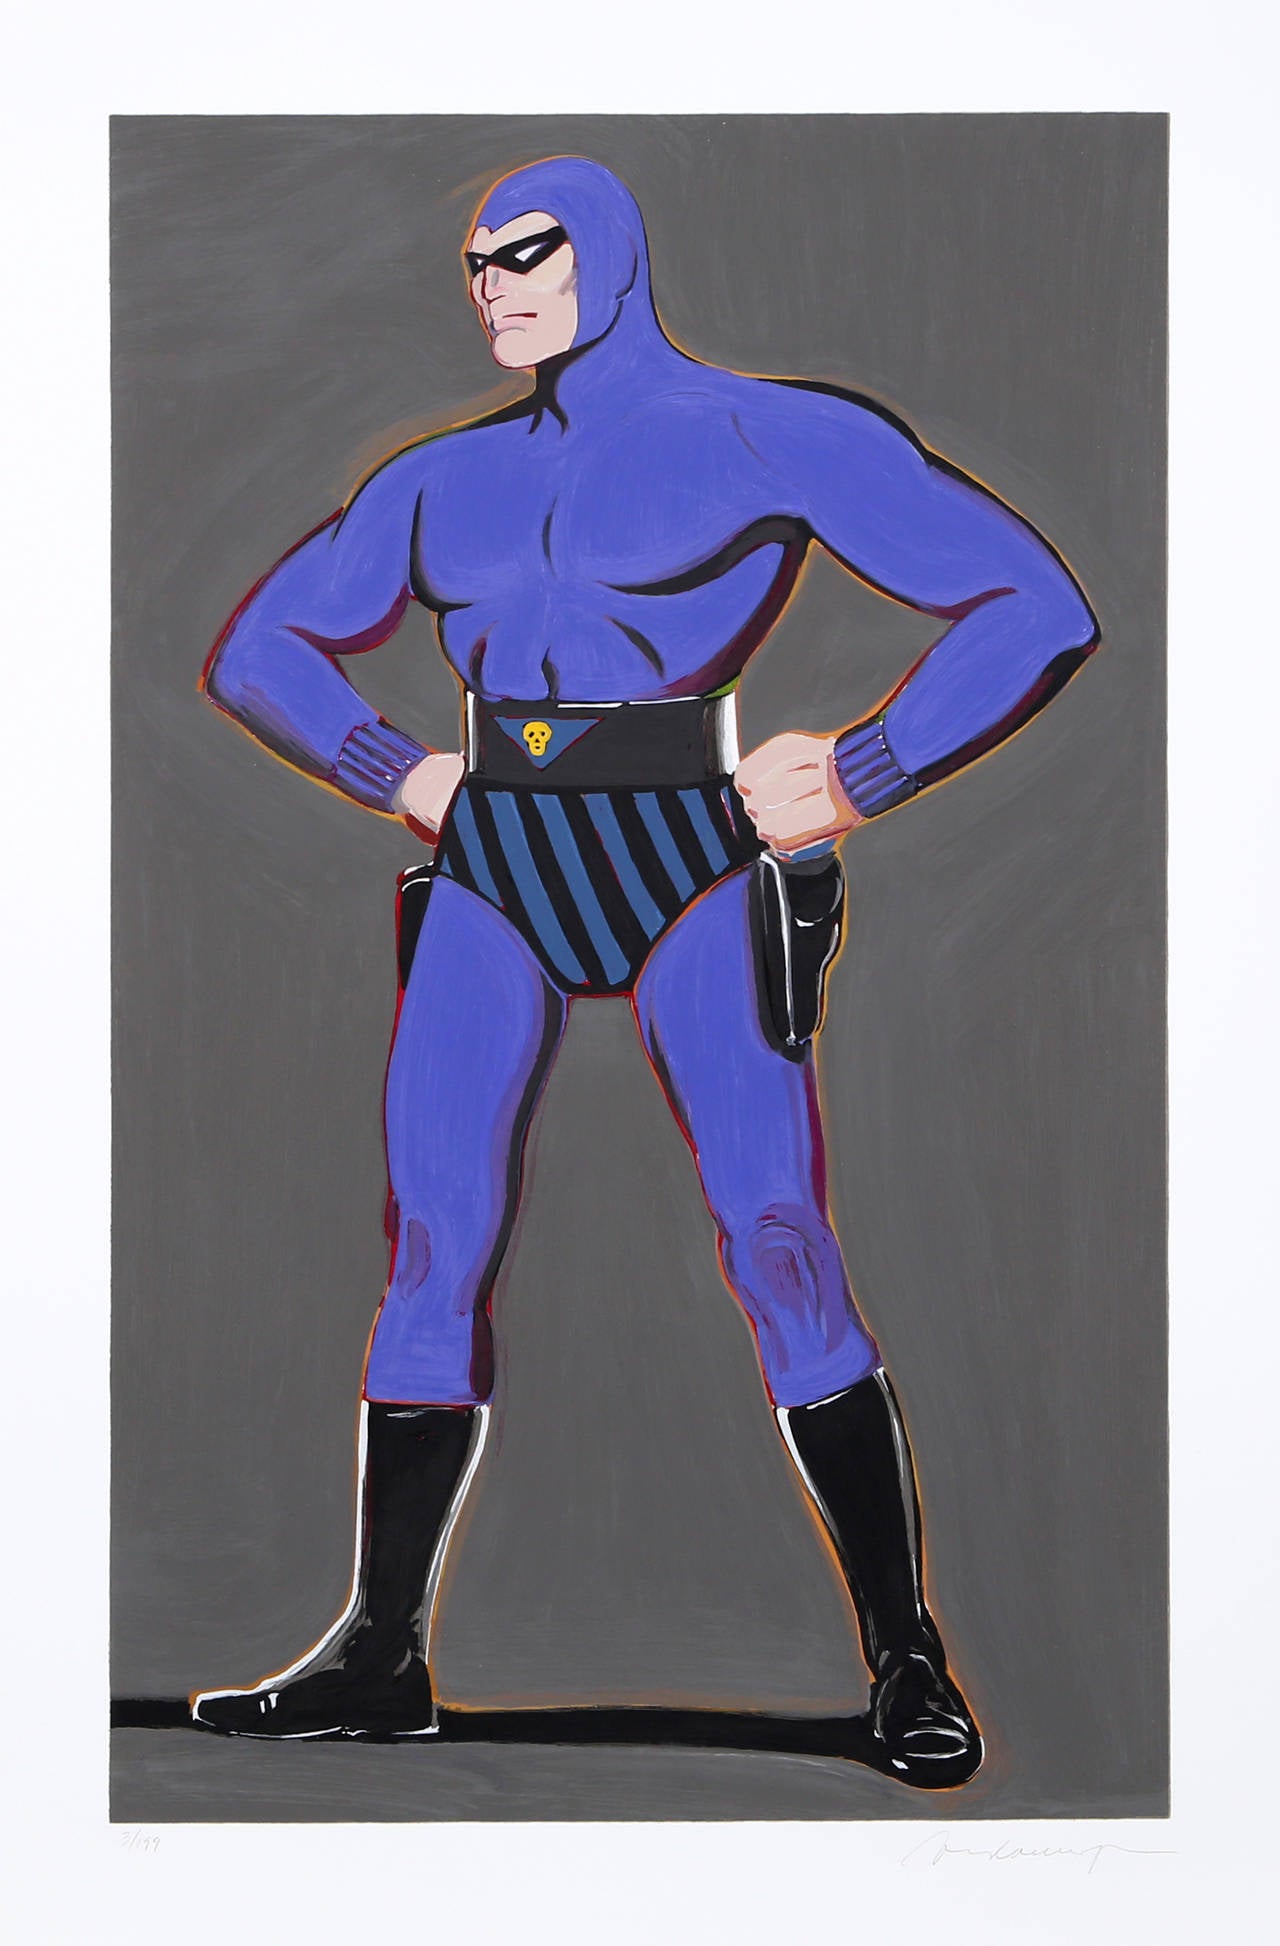 Artiste : Mel Ramos, américain (1935 - )
Titre : Fantomas
Année : 2009
Médium : Lithographie, signée et numérotée au crayon
Edition : 199 
Taille : 35,4 in. x 25,5 in. (89,92 cm x 64,77 cm)